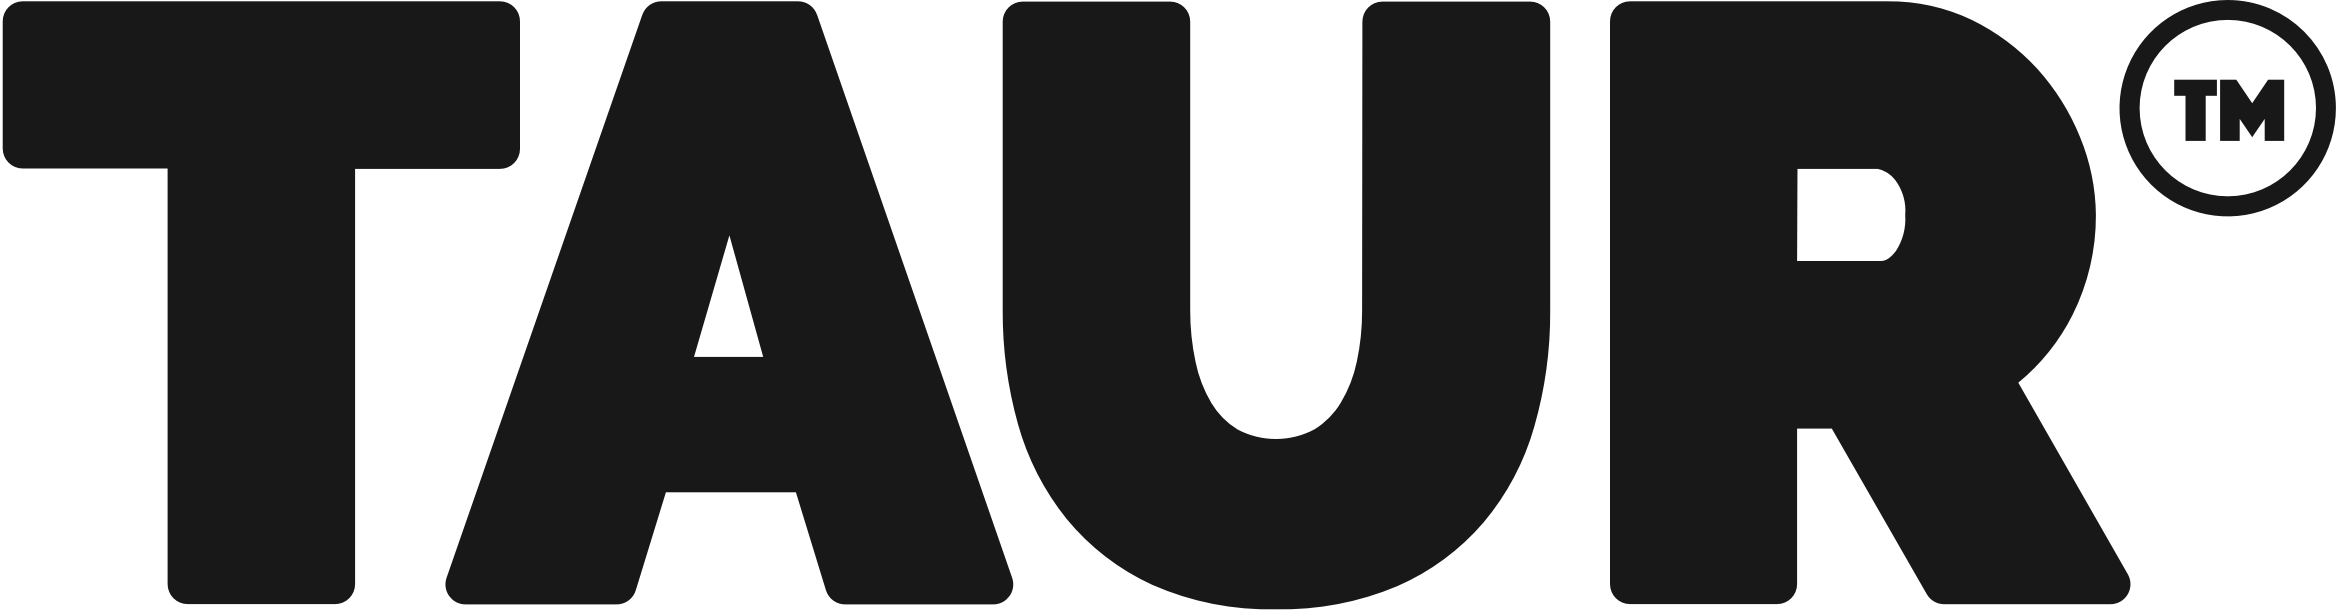 Taur logo